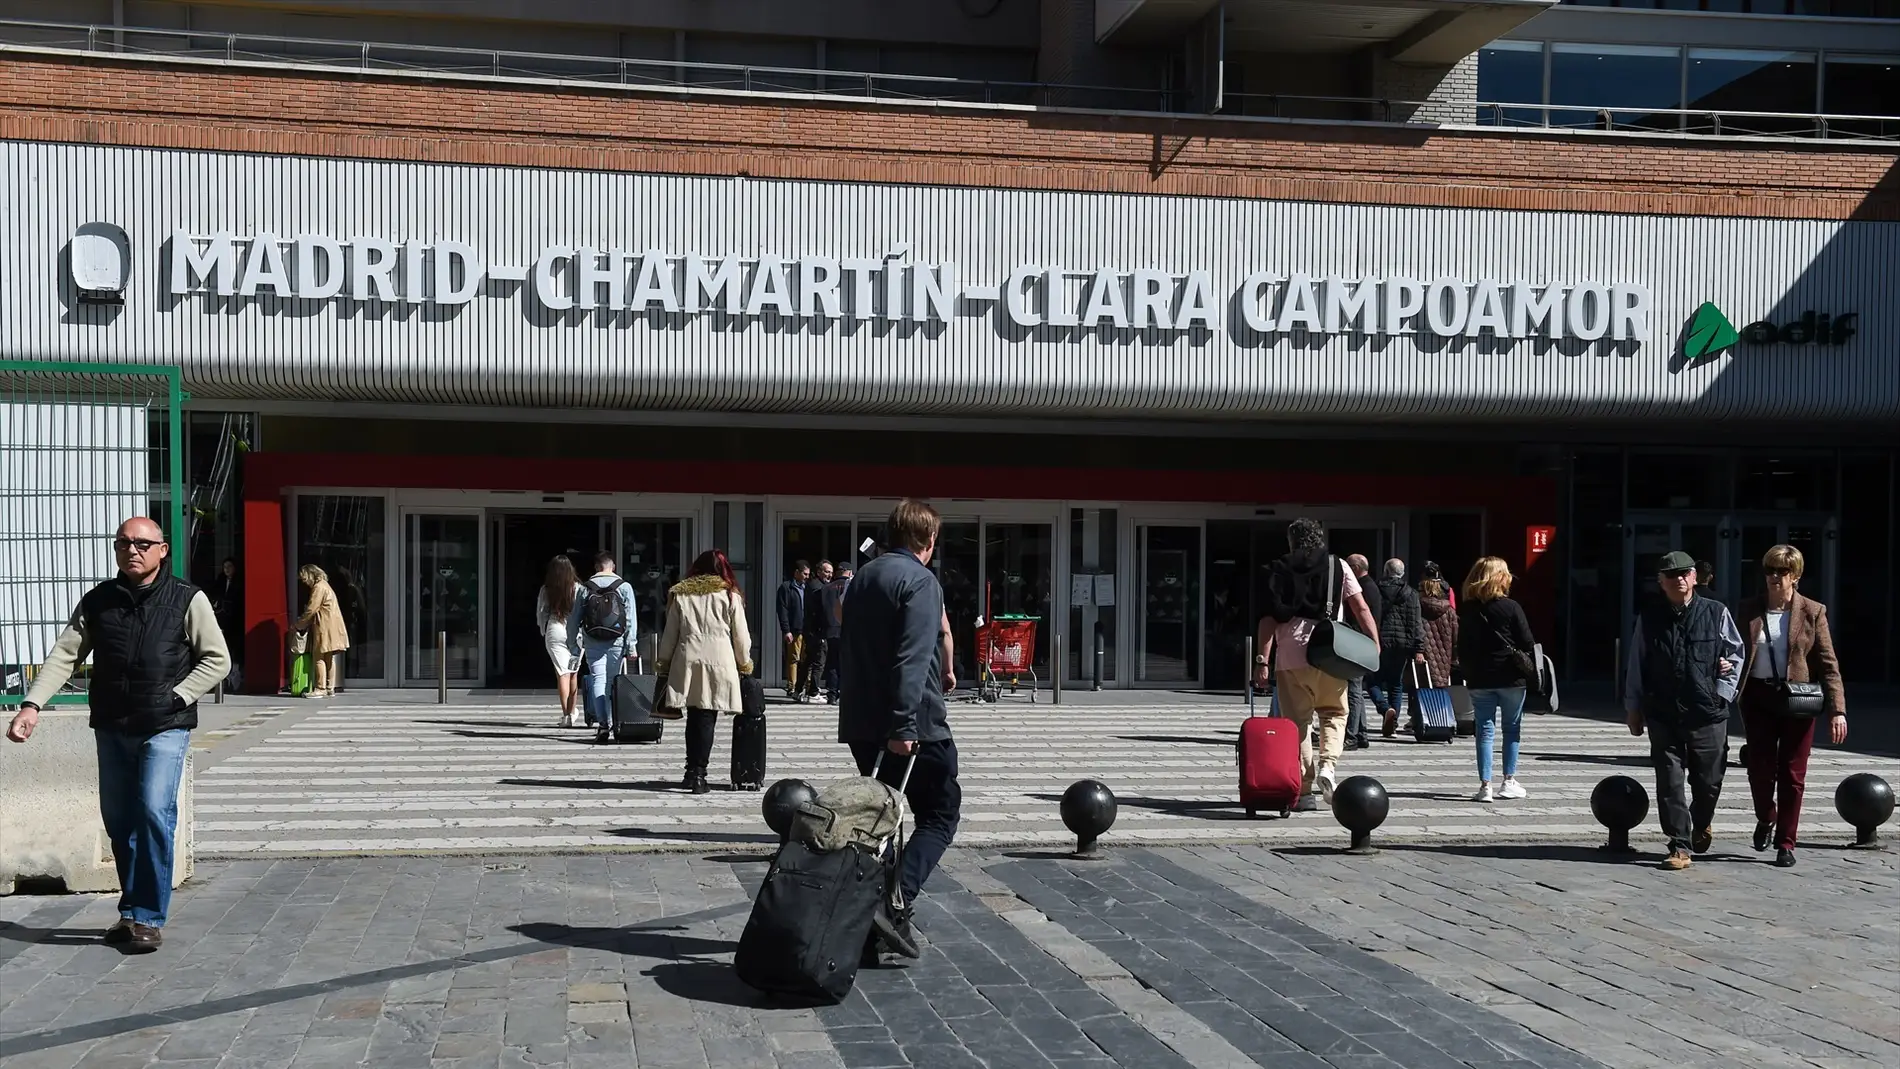 Imagen de la puerta de la estación de Madrid-Chamartín-Clara Campoamor.